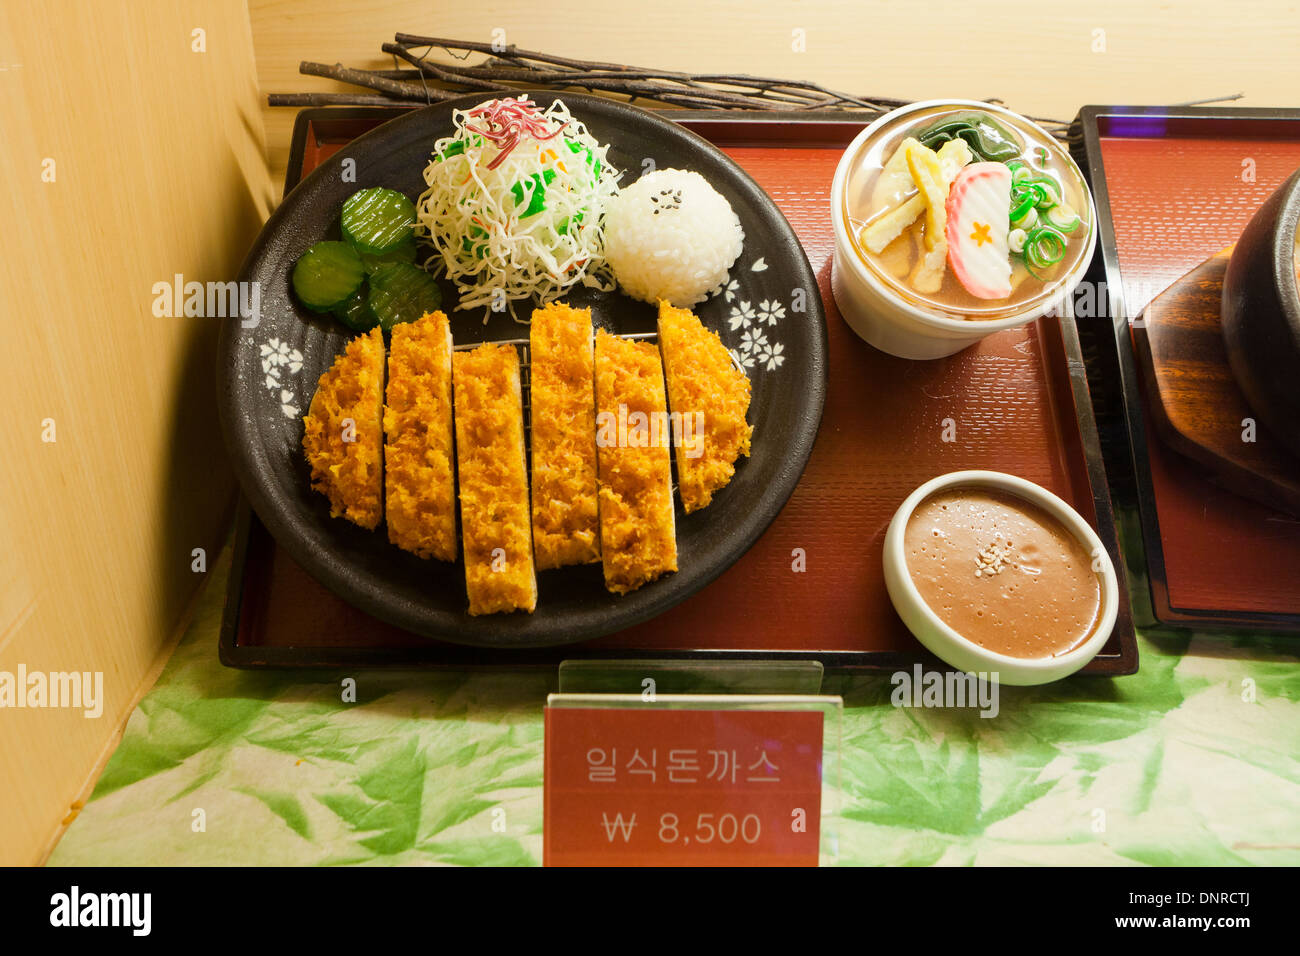 Modèle en plastique (tonkatsu - escalope de porc panée) vitrine à fast food restaurant - Séoul, Corée du Sud Banque D'Images